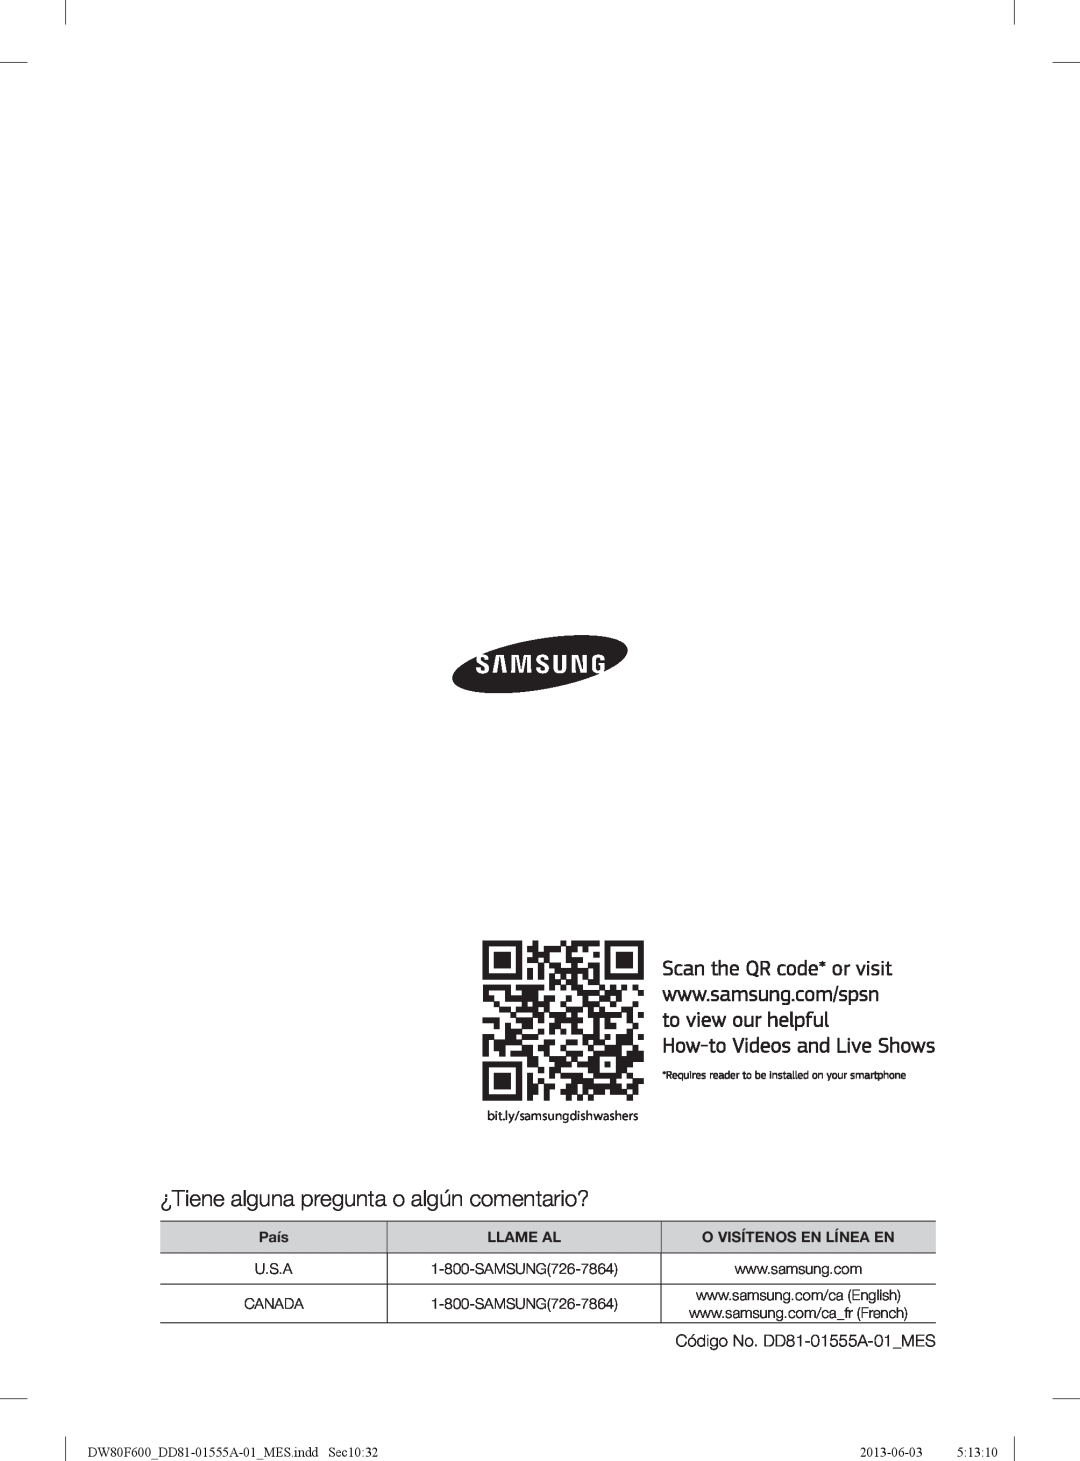 Samsung DW80F600UTW ¿Tiene alguna pregunta o algún comentario?, País, Llame Al, O Visítenos En Línea En, 2013-06-03 